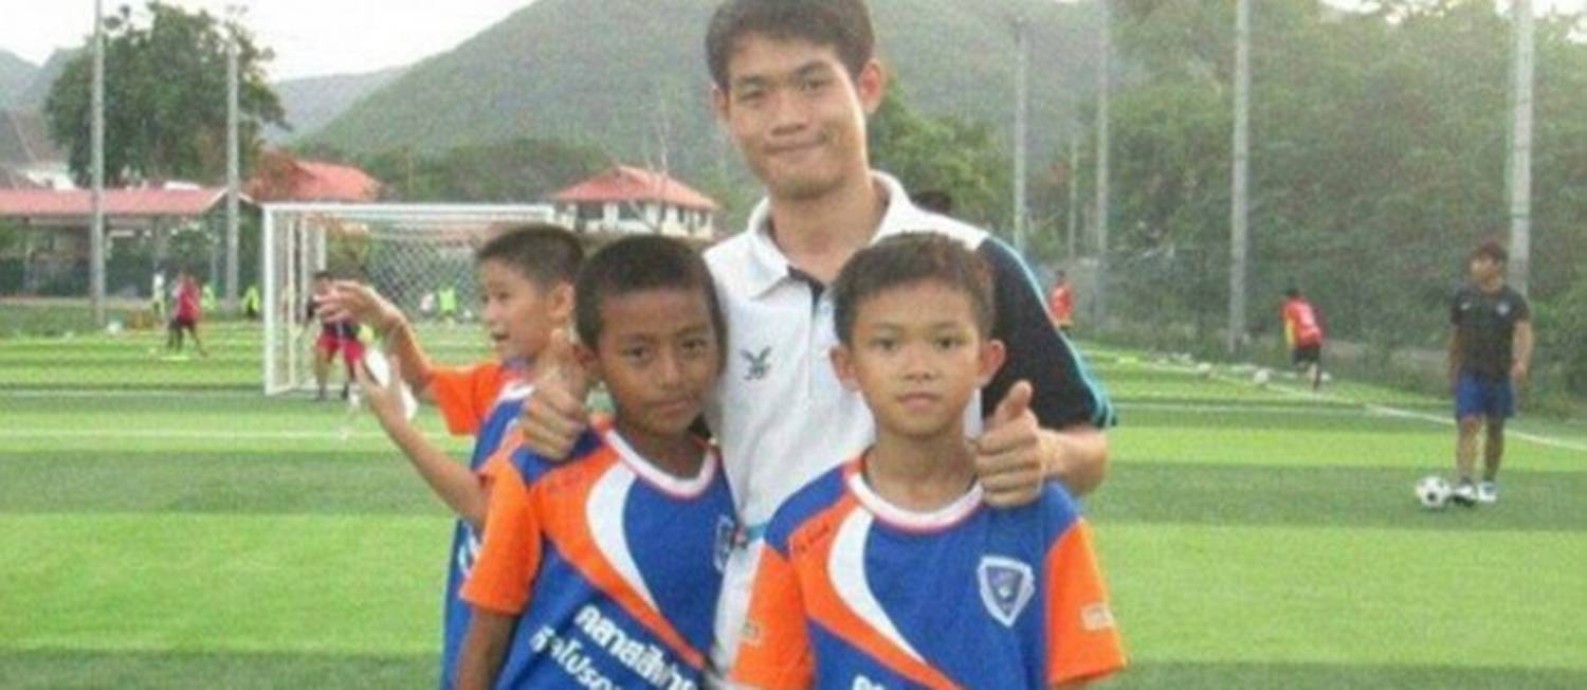 Ekapol Chanthawong, treinador assistente que está preso com meninos de time de futebol em caverna da Tailândia Foto: © Facebook